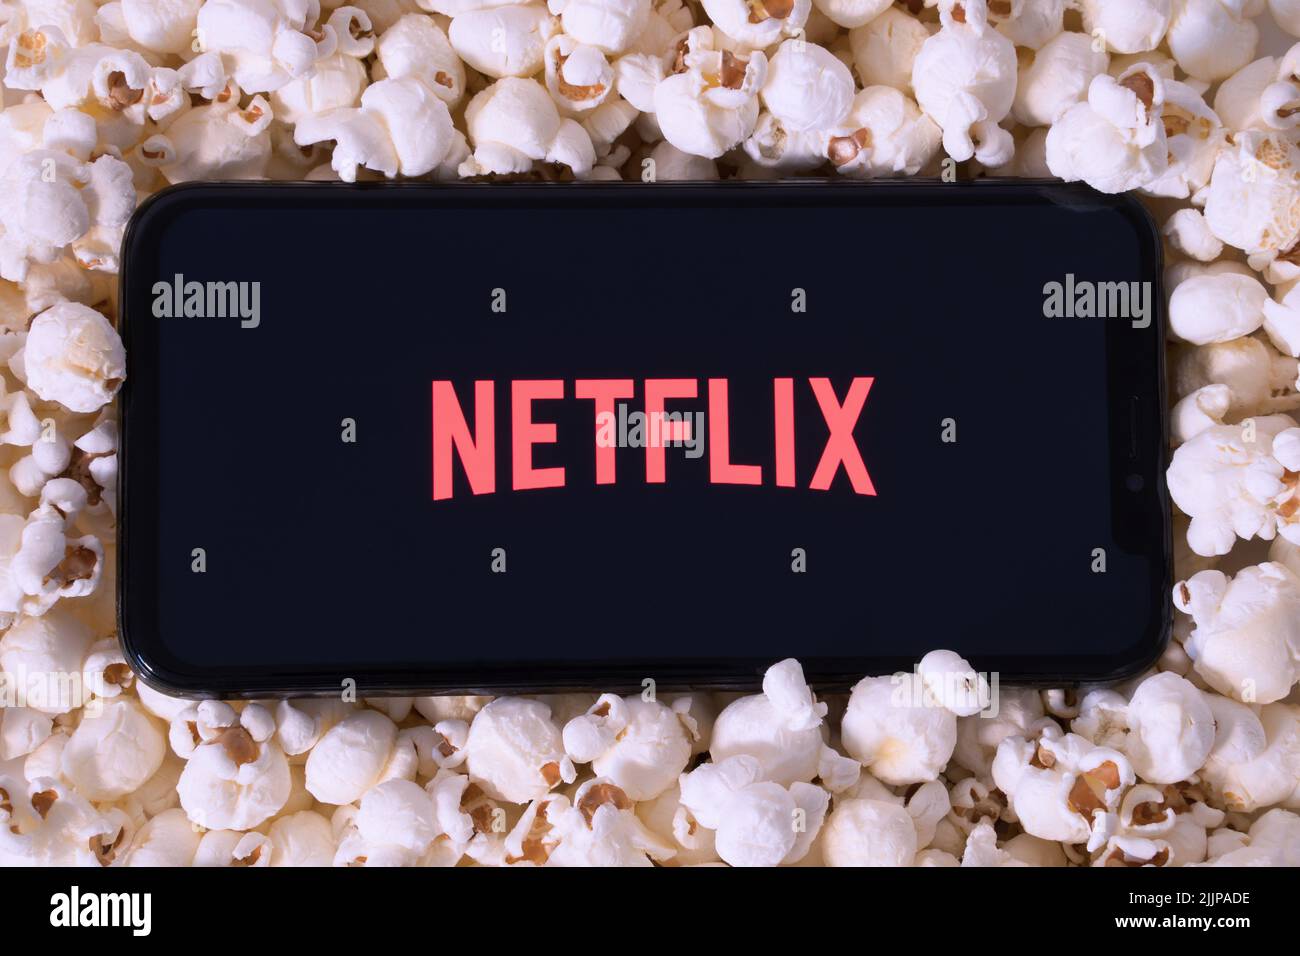 A preparare il popcorn per guardare un film su Netflix con il telefono cellulare Foto Stock